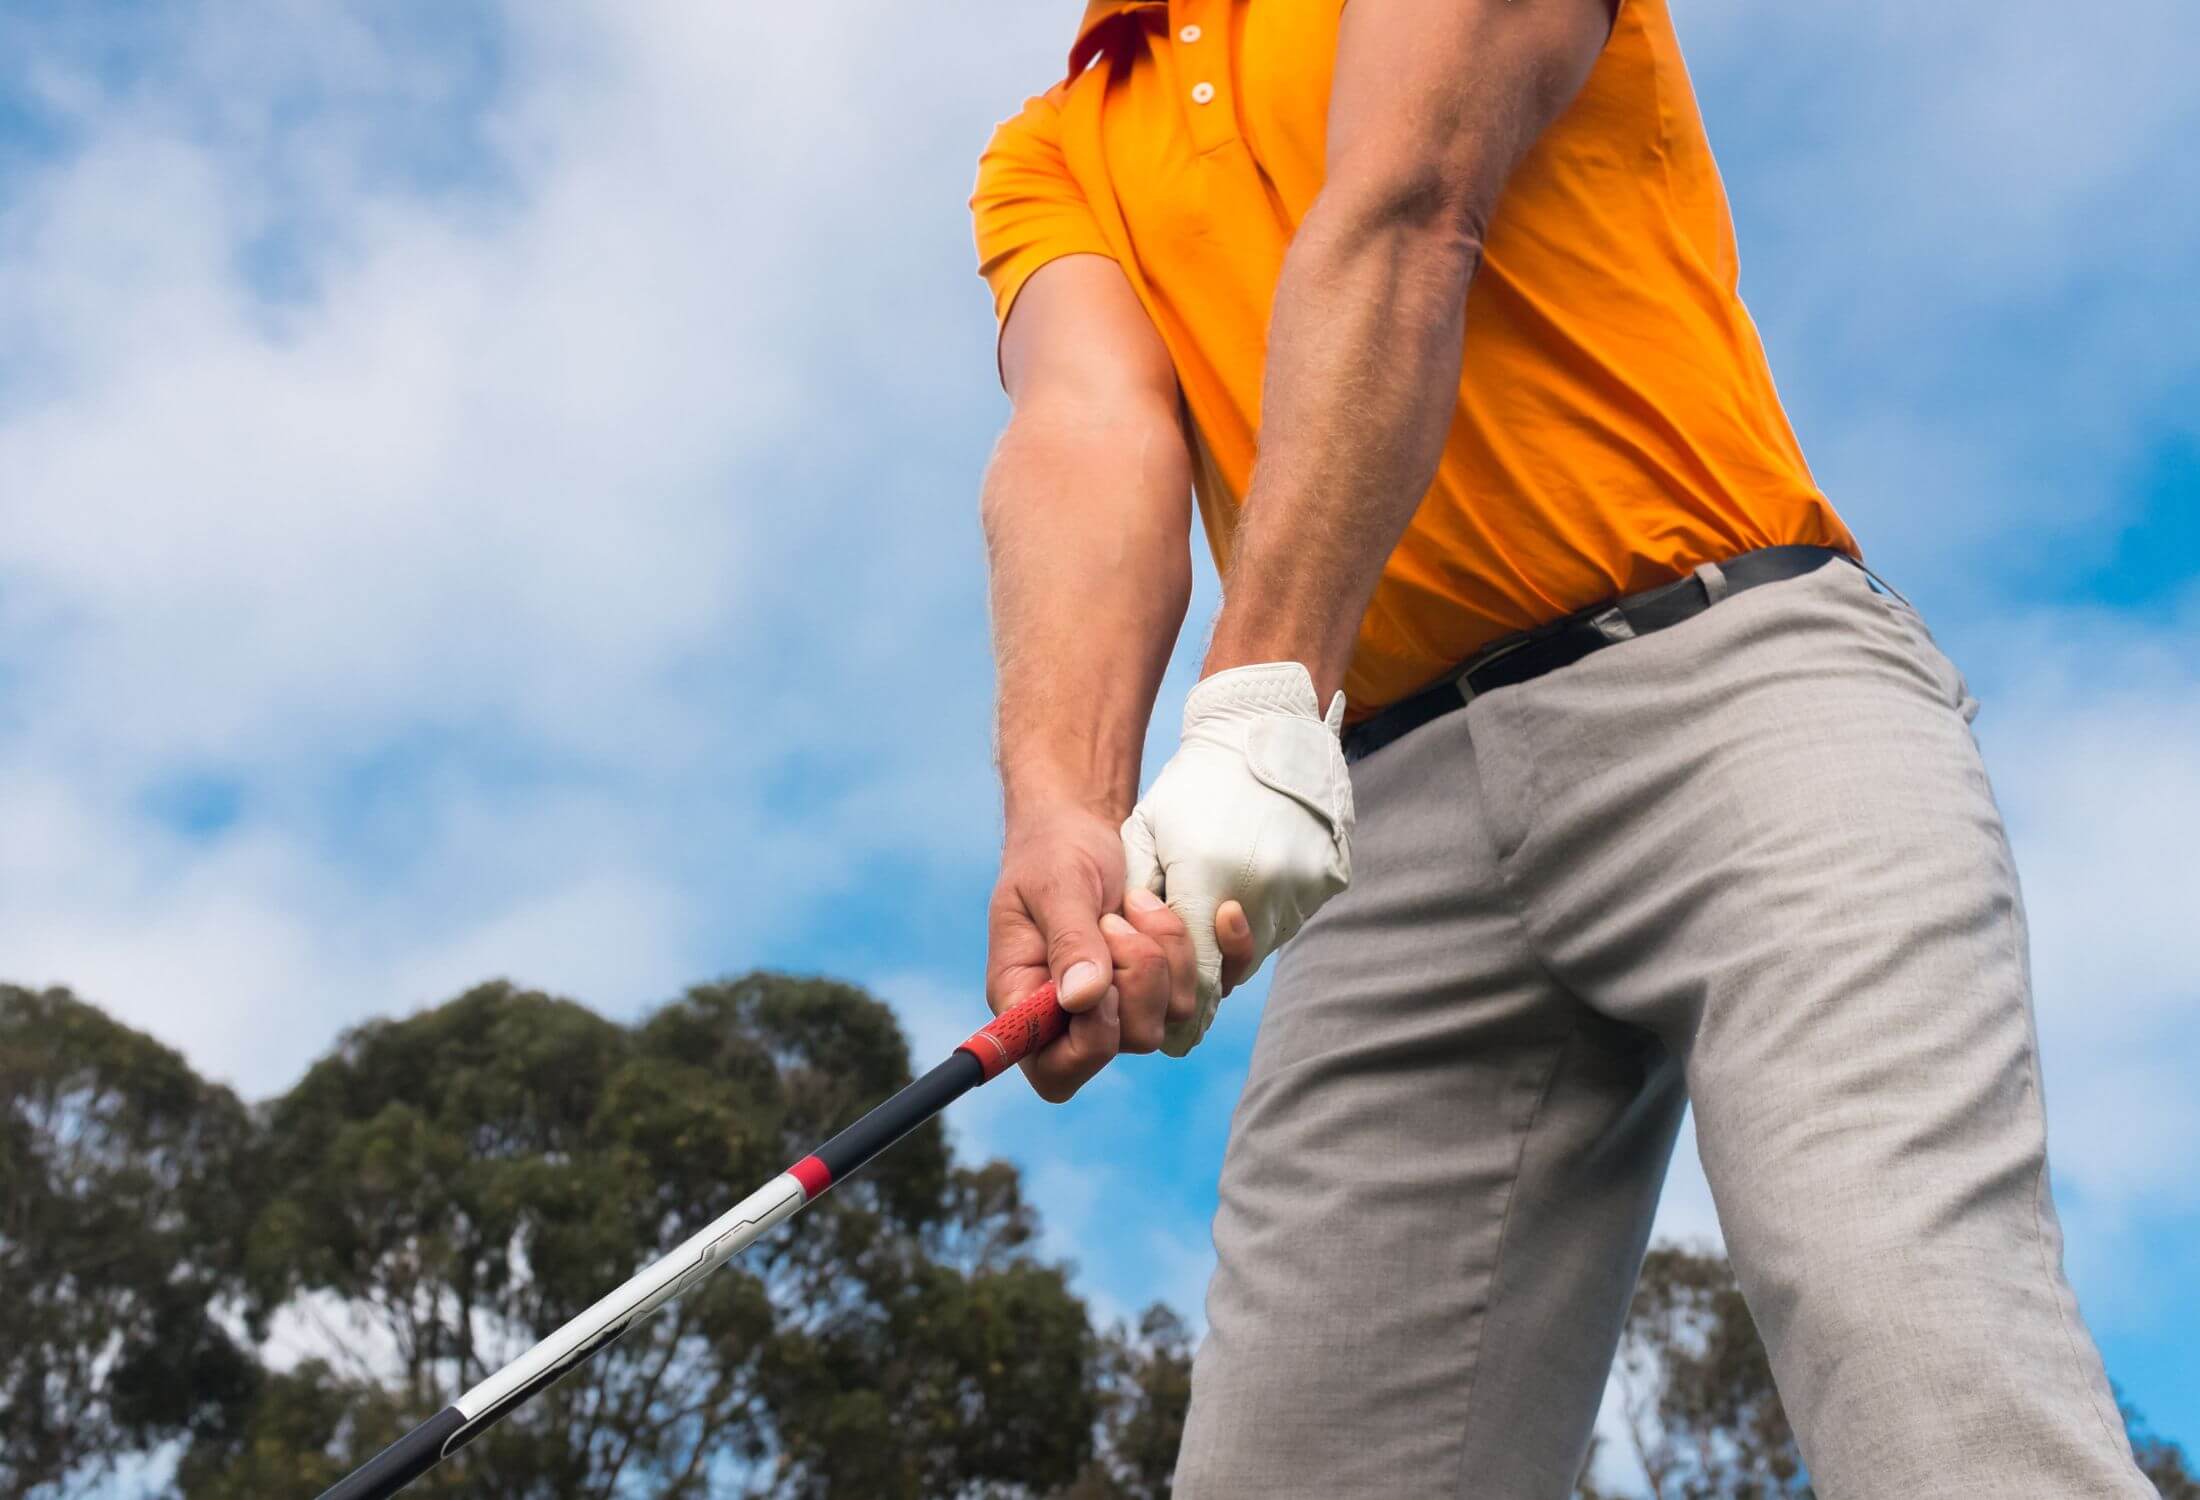 golf grip pressure points